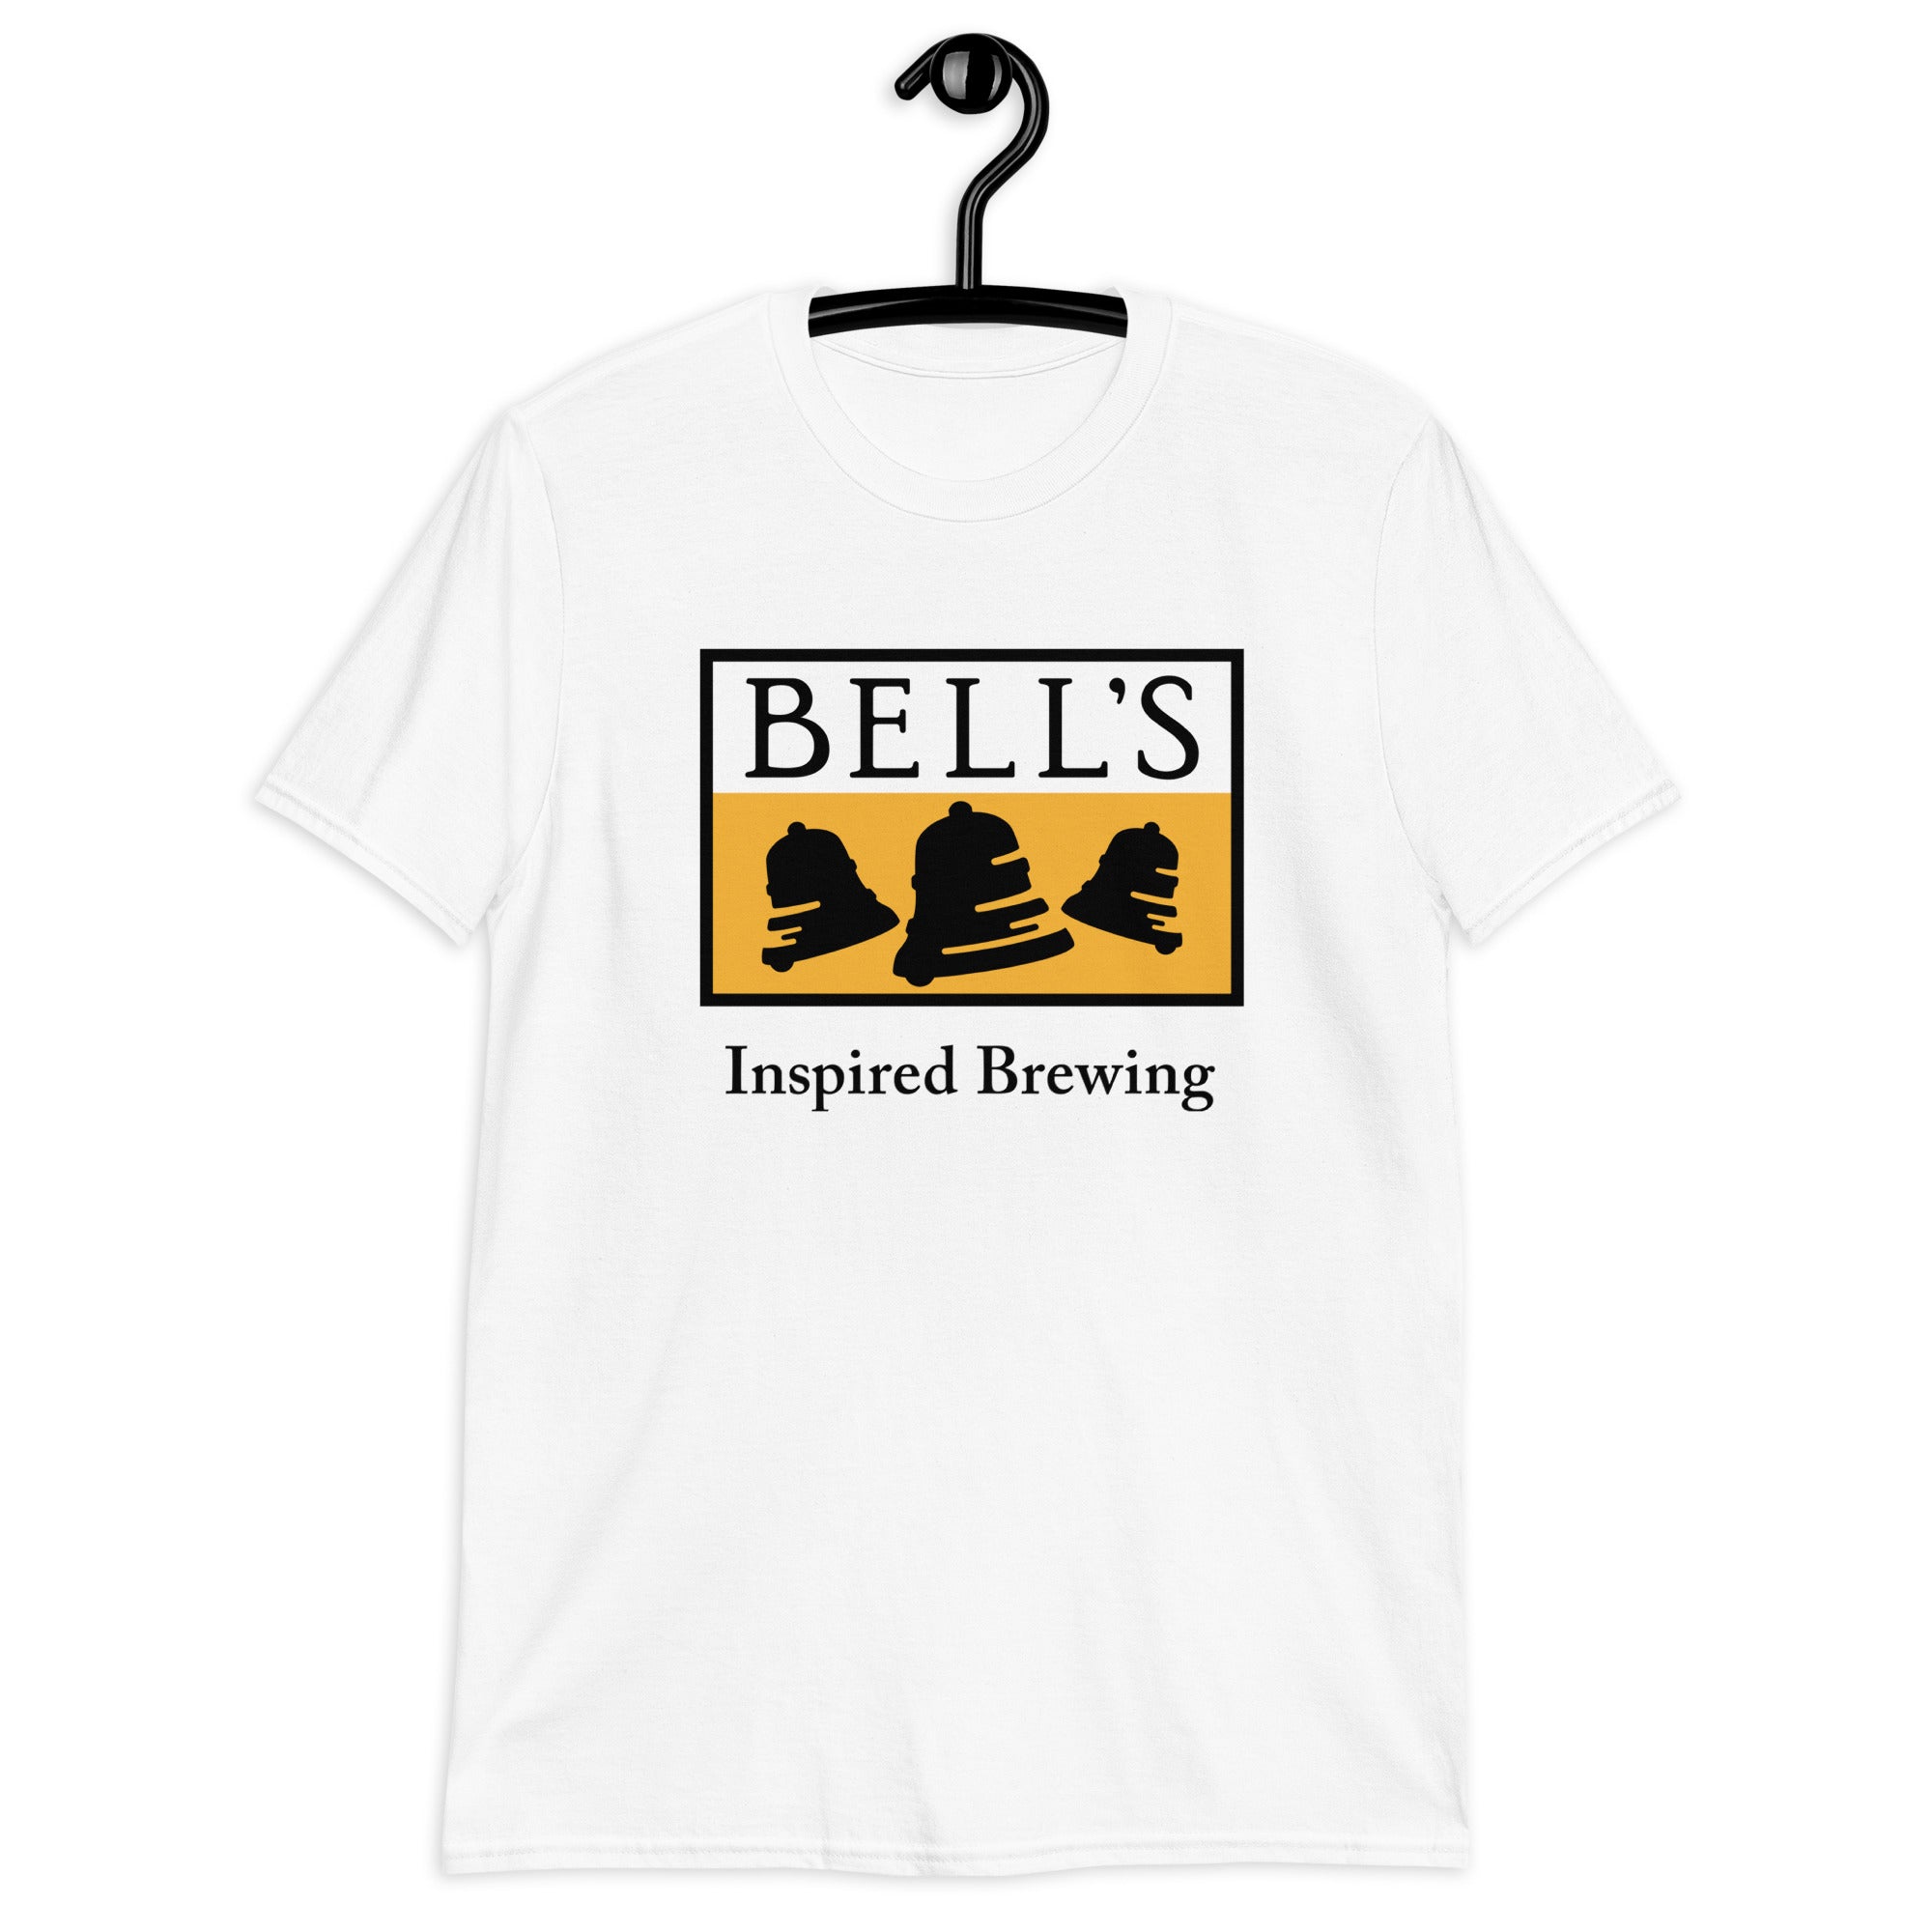 Bell's Brewery T-Shirt